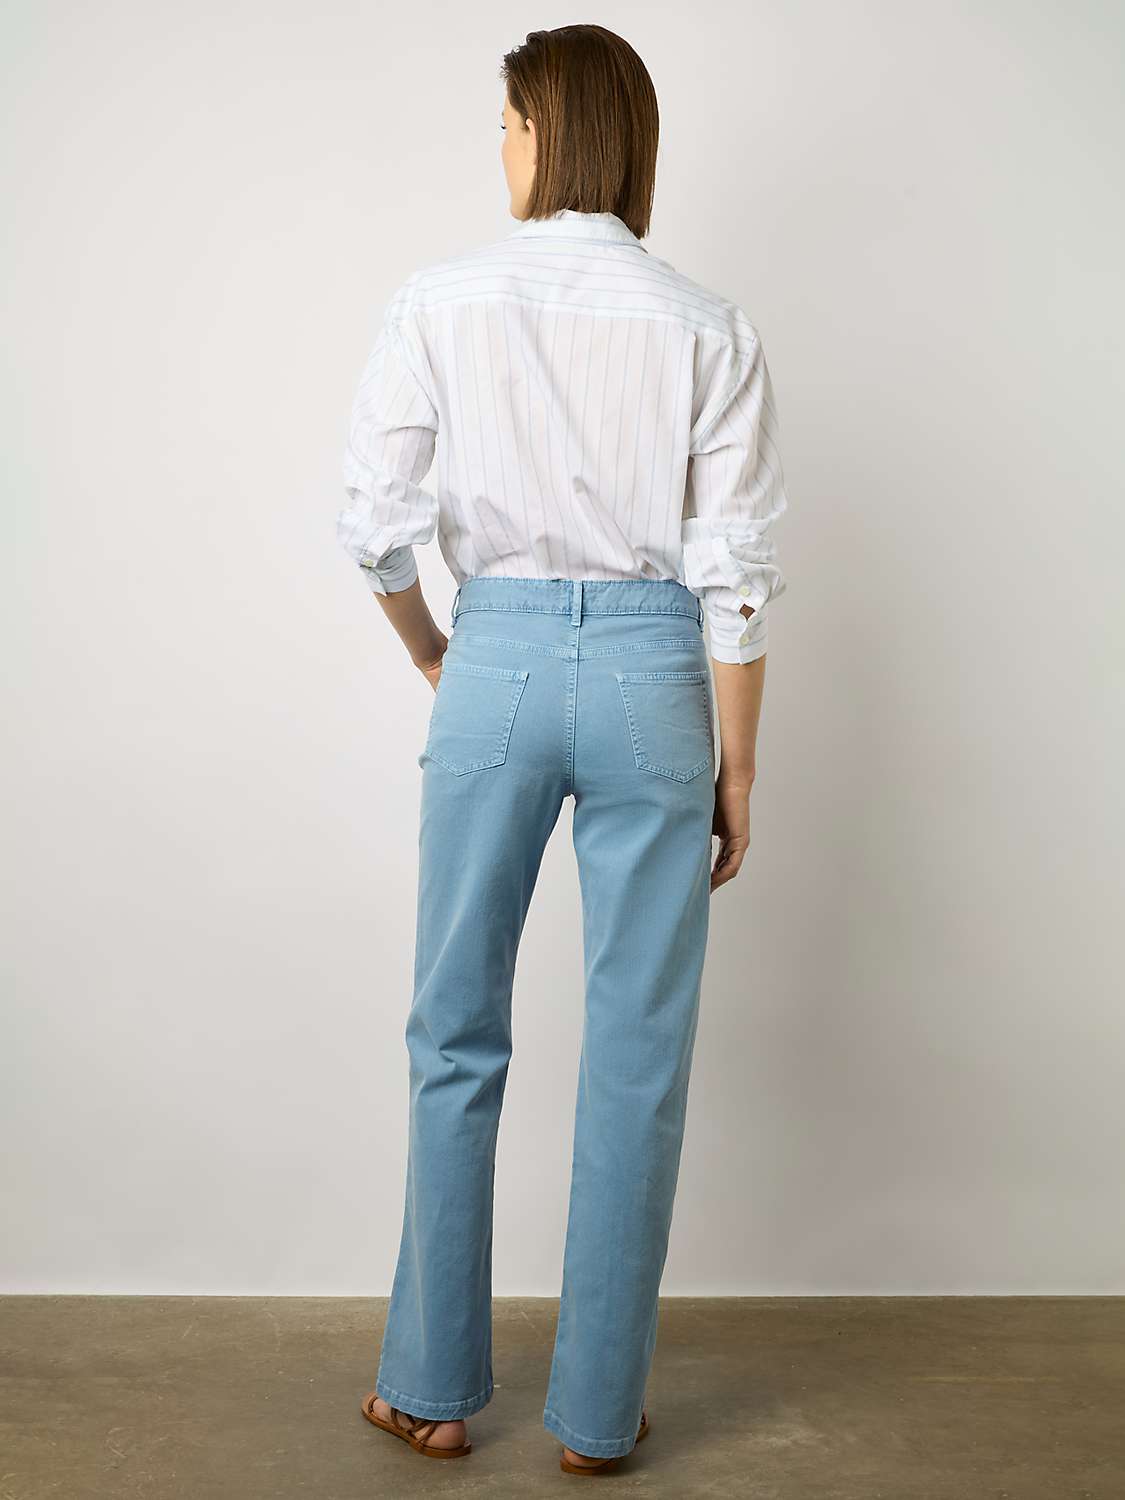 Buy Gerard Darel Carell Cotton Blend Jeans, Blue Online at johnlewis.com